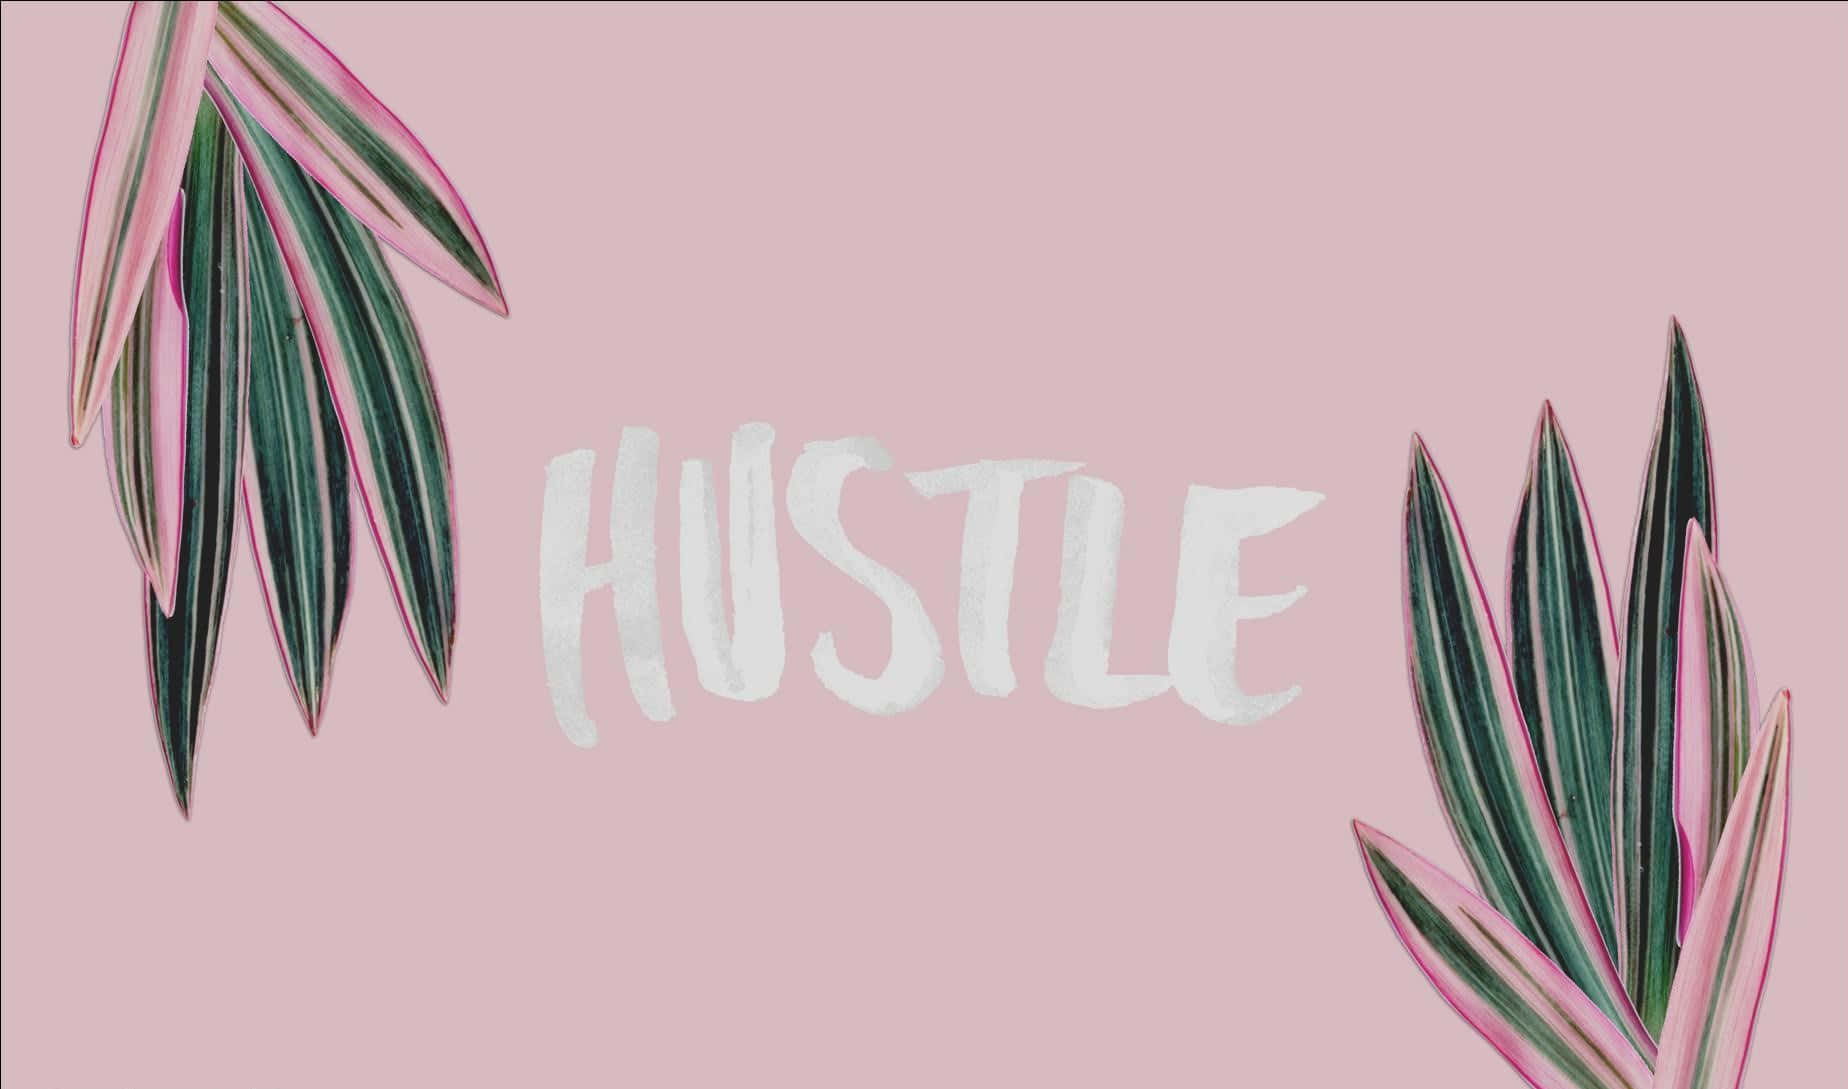 En pink baggrund med ordet hustle på det. Wallpaper